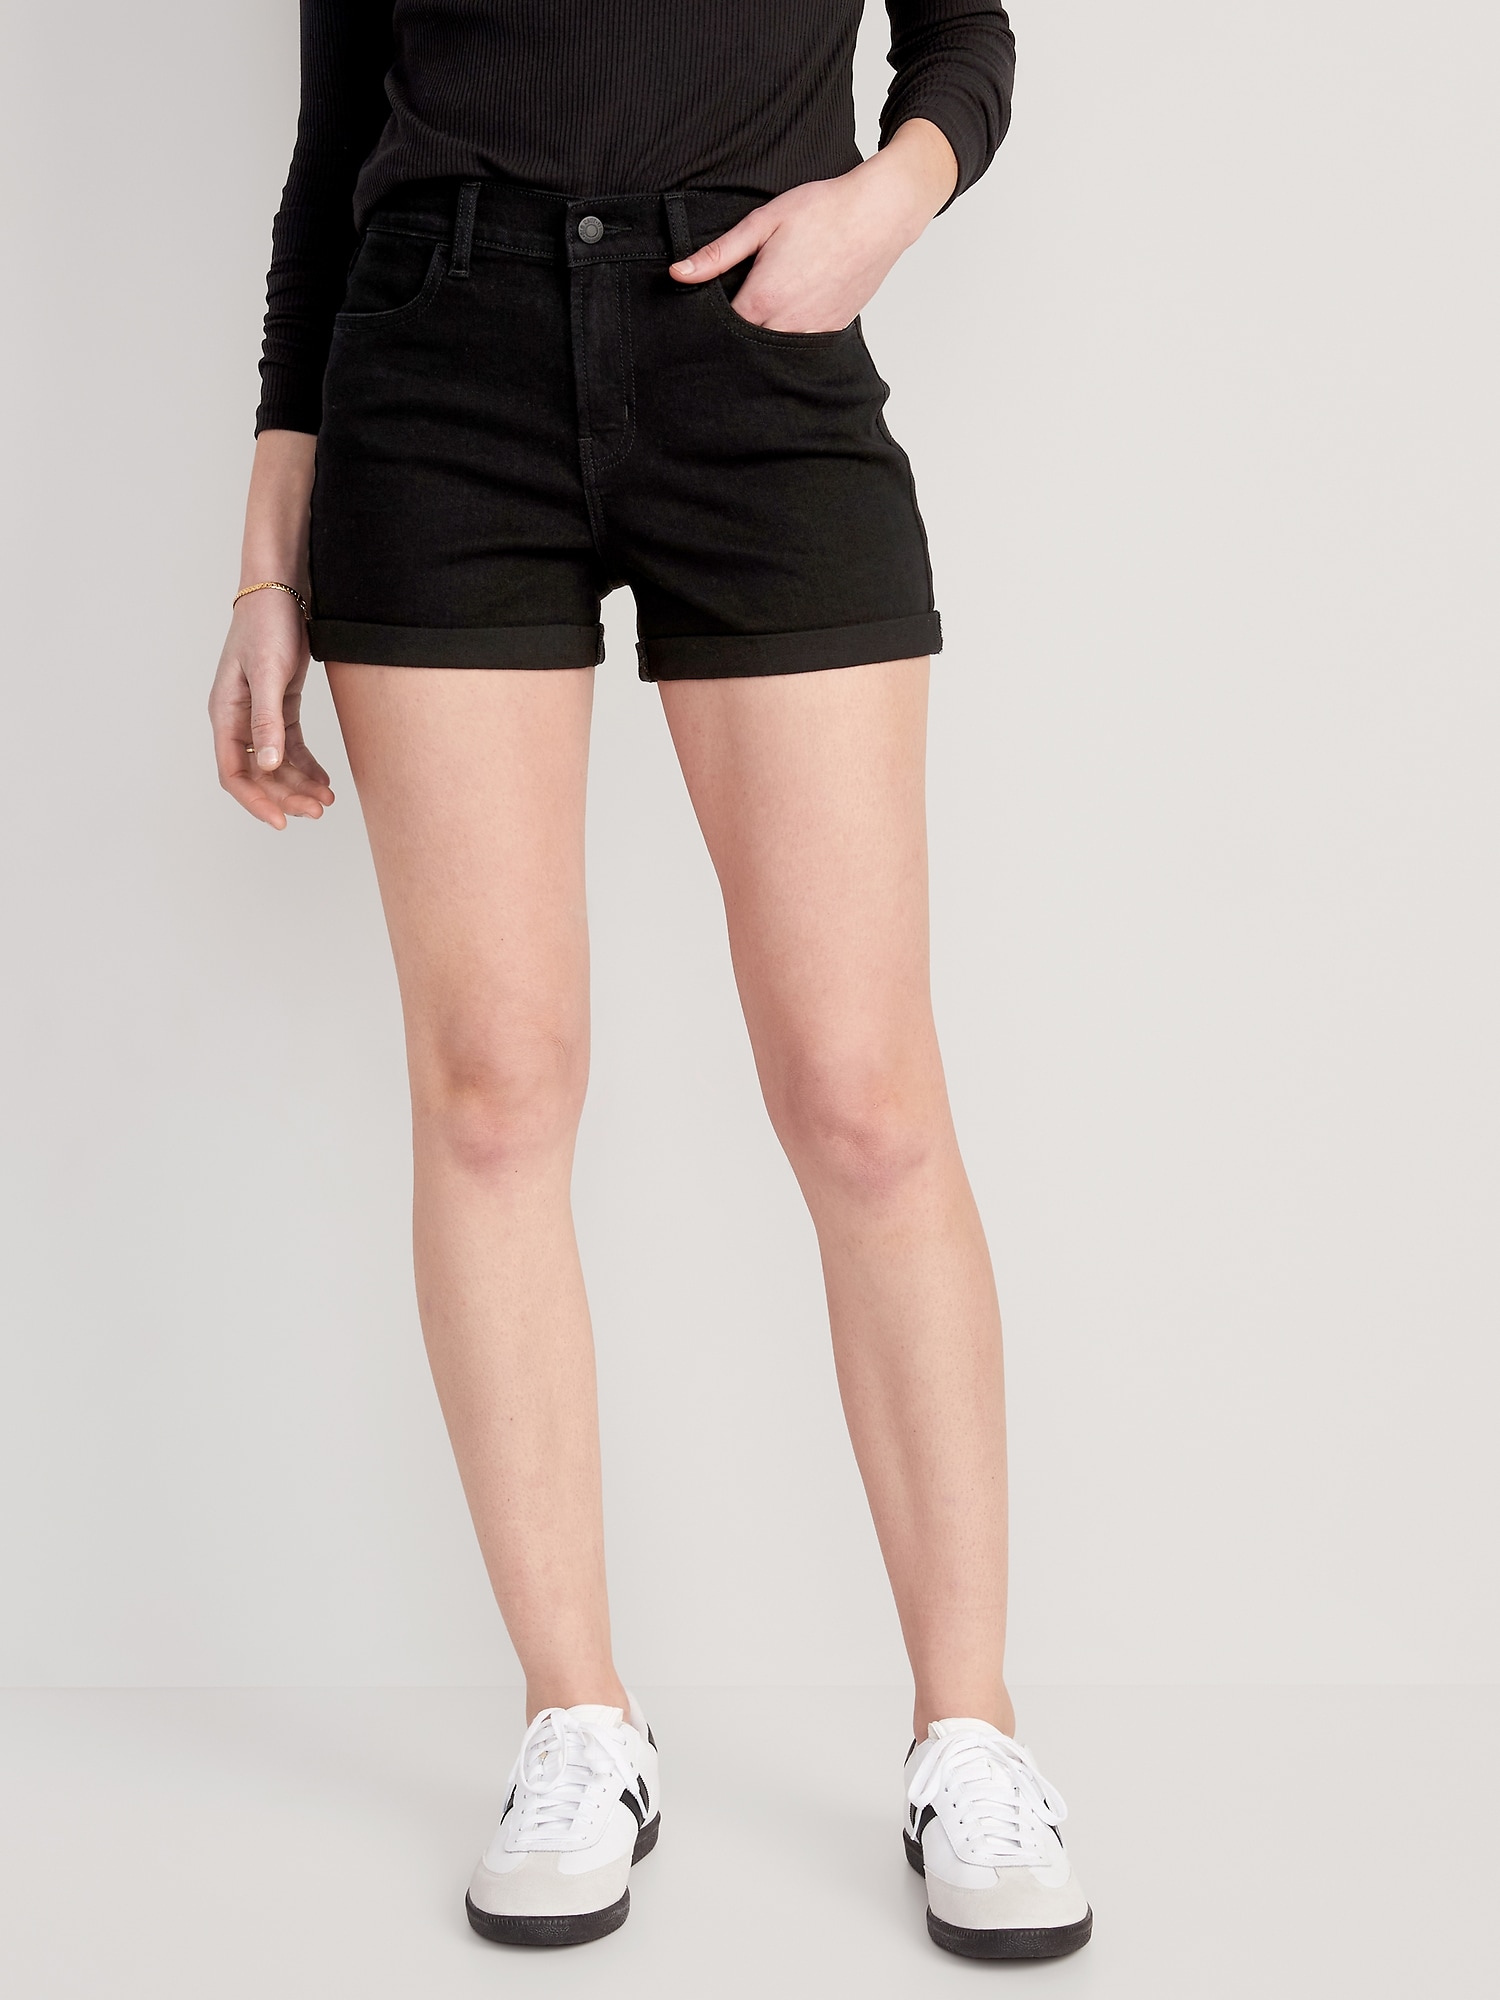 Aodrusa Womens Ripped Denim Shorts Mid Rise Body Enhancing Curvy Cutoff  Distressed Jeans | Denim shorts, Ripped shorts, Ripped denim